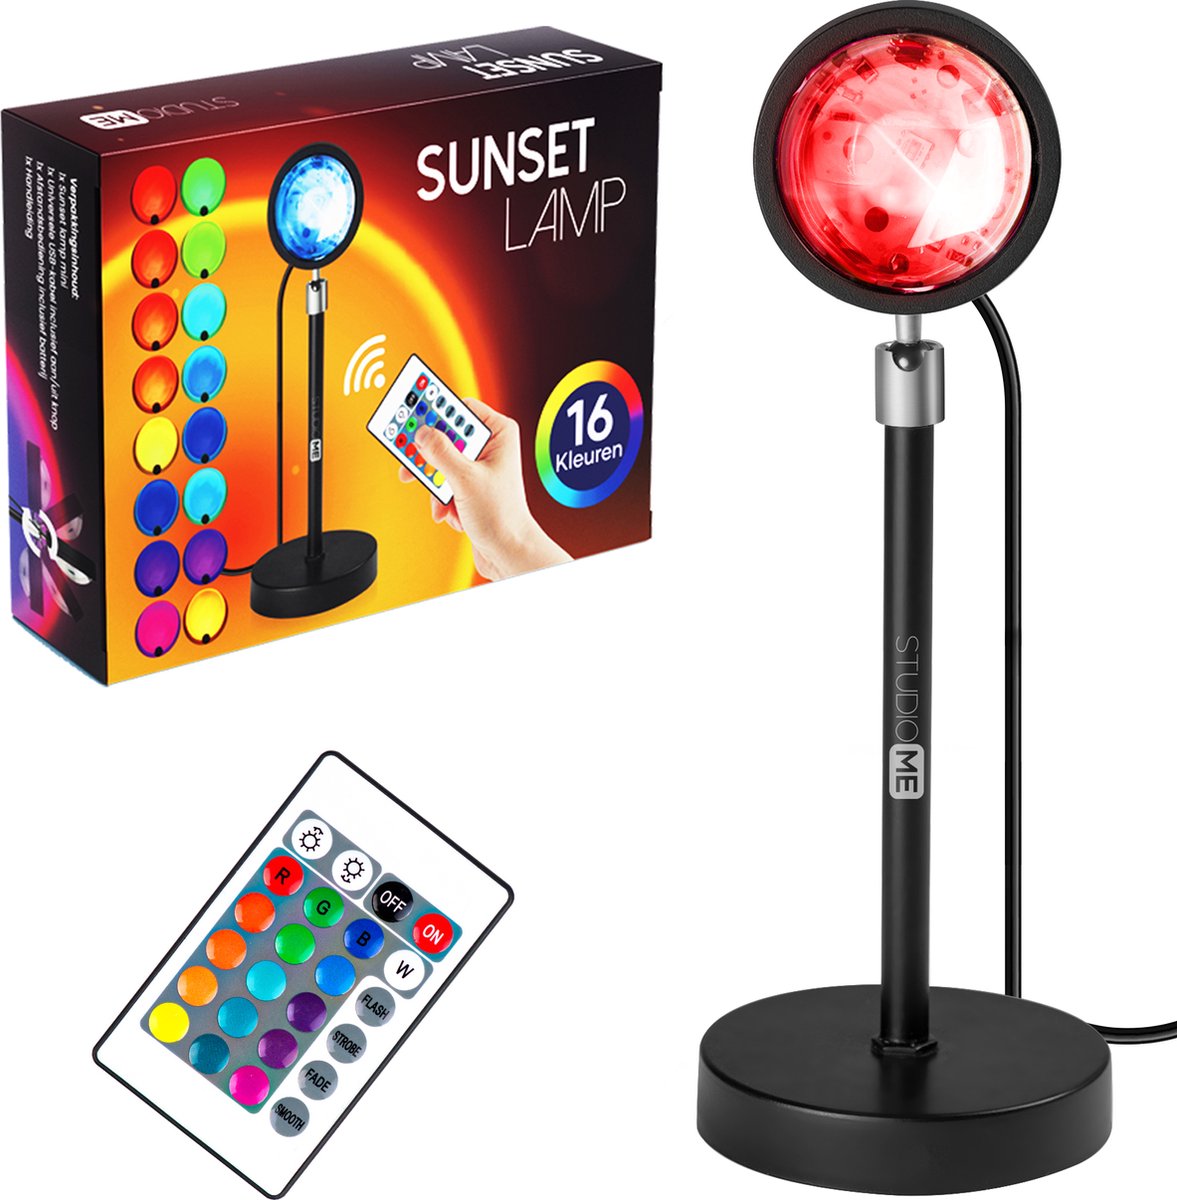 Studio ME Sunset lamp – projectorlamp – Sfeerverlichting binnen – 16 kleuren – LED – afstandsbediening – 360 graden draaibaar - Sfeerlamp - Galaxy projector - Studio ME®